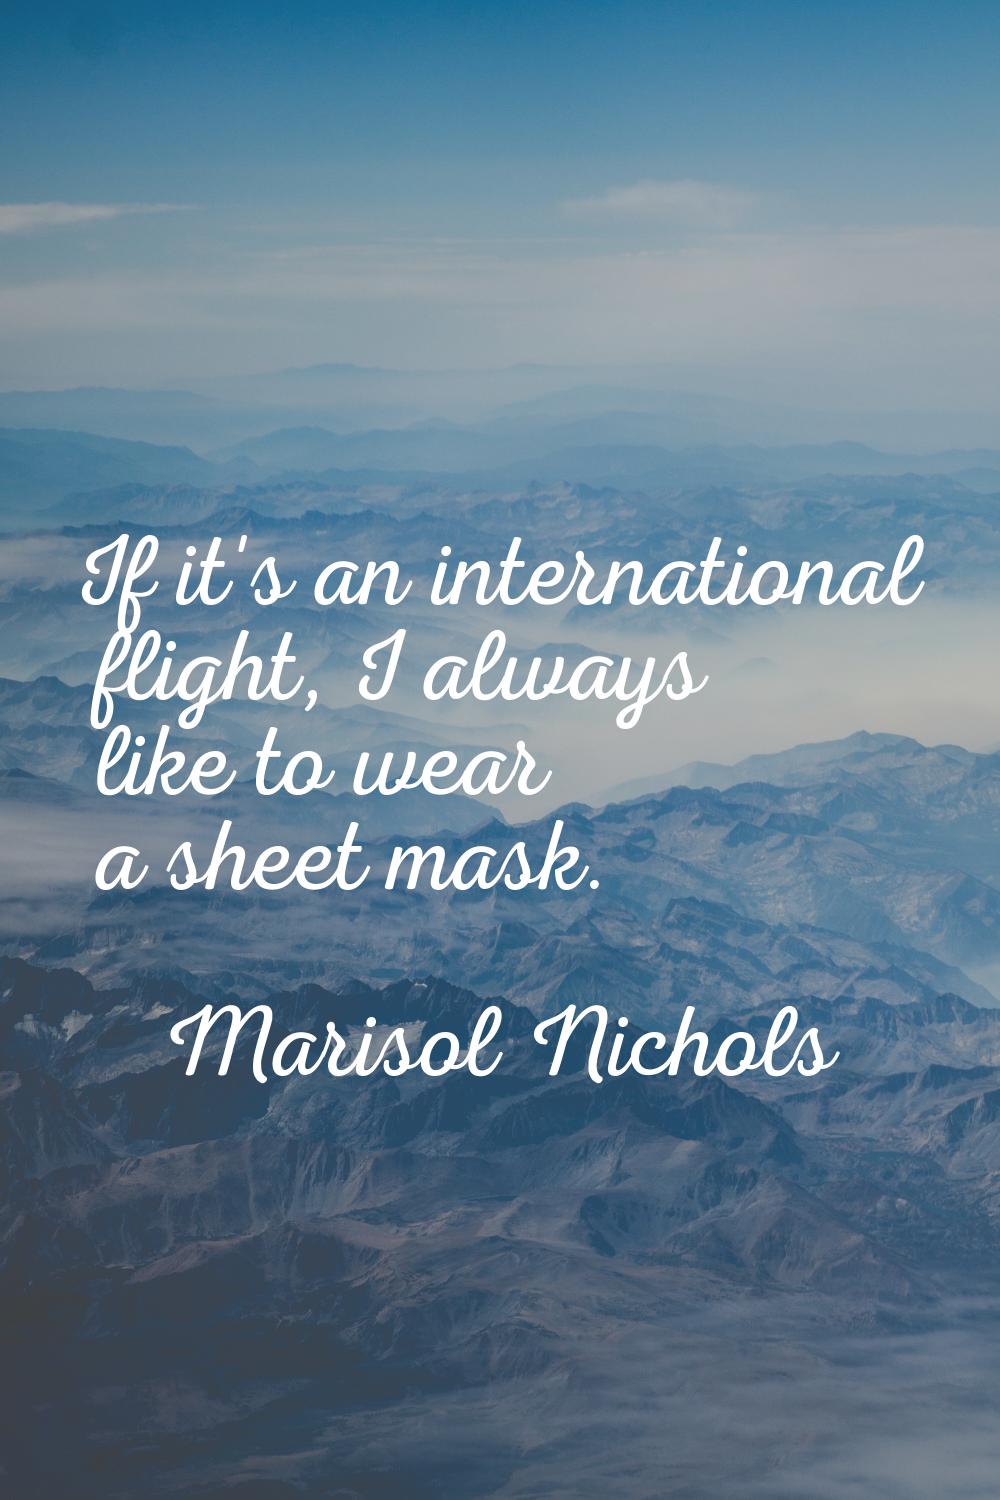 If it's an international flight, I always like to wear a sheet mask.